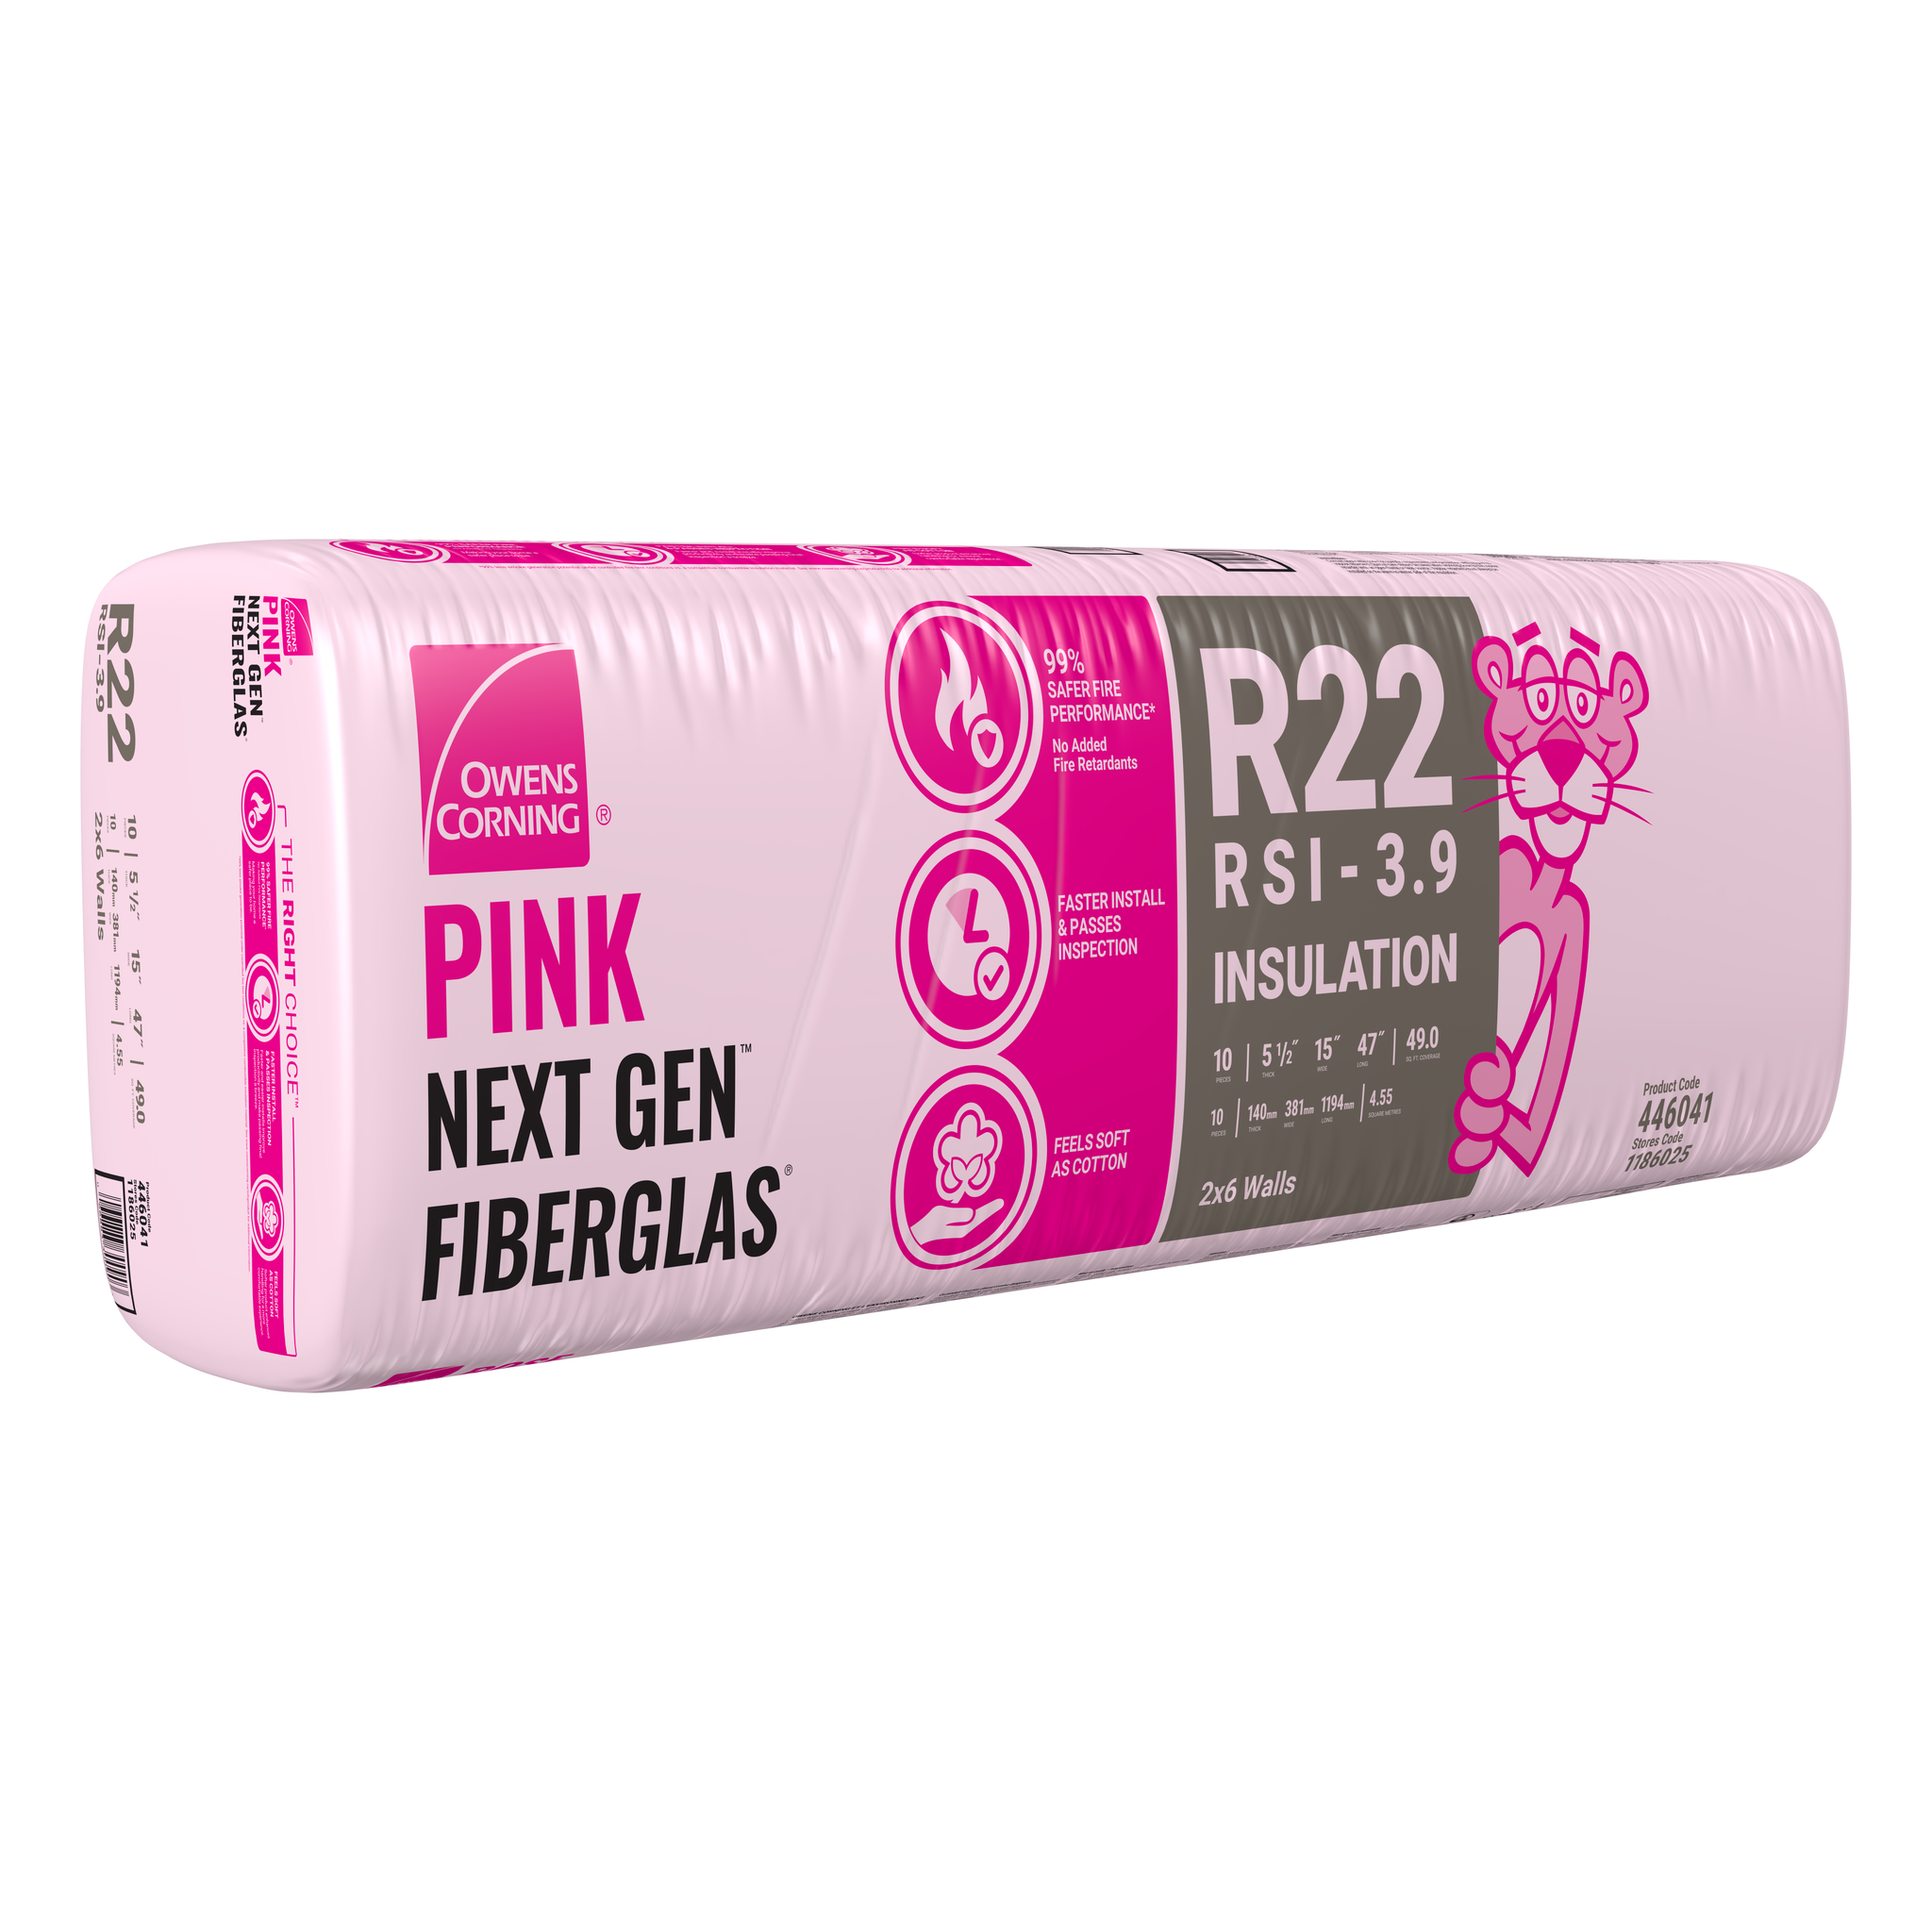 R-22 PINK NEXT GEN FIBERGLAS Insulation 15-inch x 47-inch x 5.5-inch (49.0 sq.ft.)